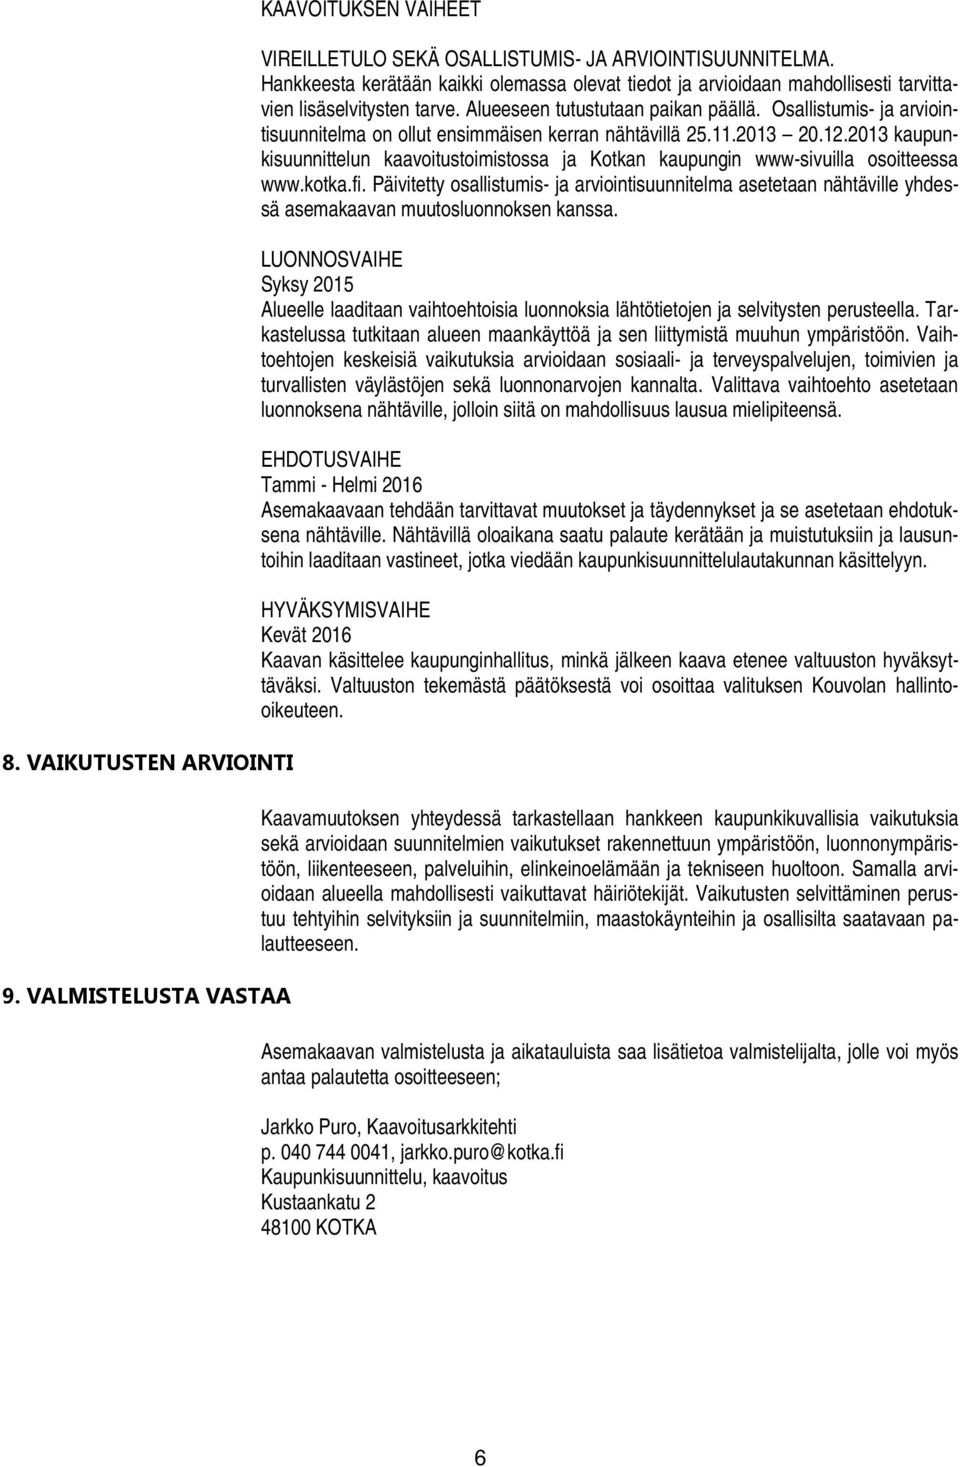 Osallistumis- ja arviointisuunnitelma on ollut ensimmäisen kerran nähtävillä 25.11.2013 20.12.2013 kaupunkisuunnittelun kaavoitustoimistossa ja Kotkan kaupungin www-sivuilla osoitteessa www.kotka.fi.